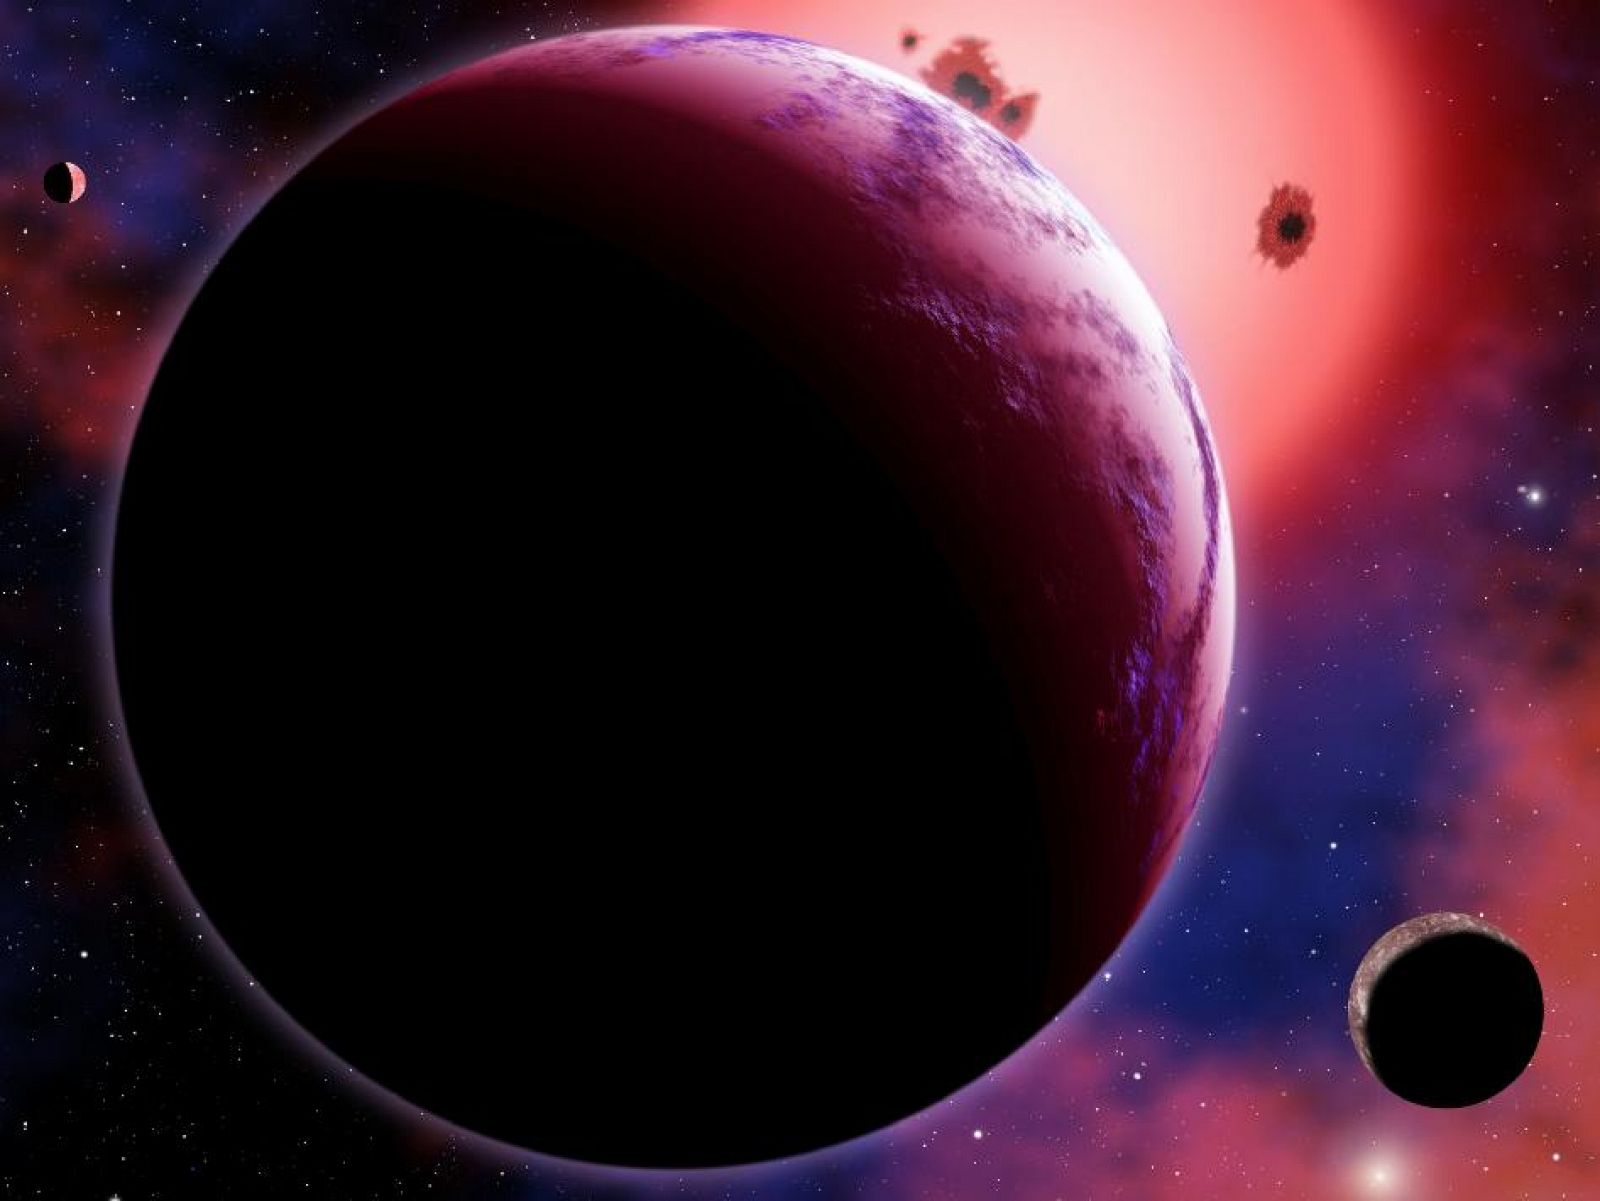 Representación artística del exoplaneta GJ 1214b